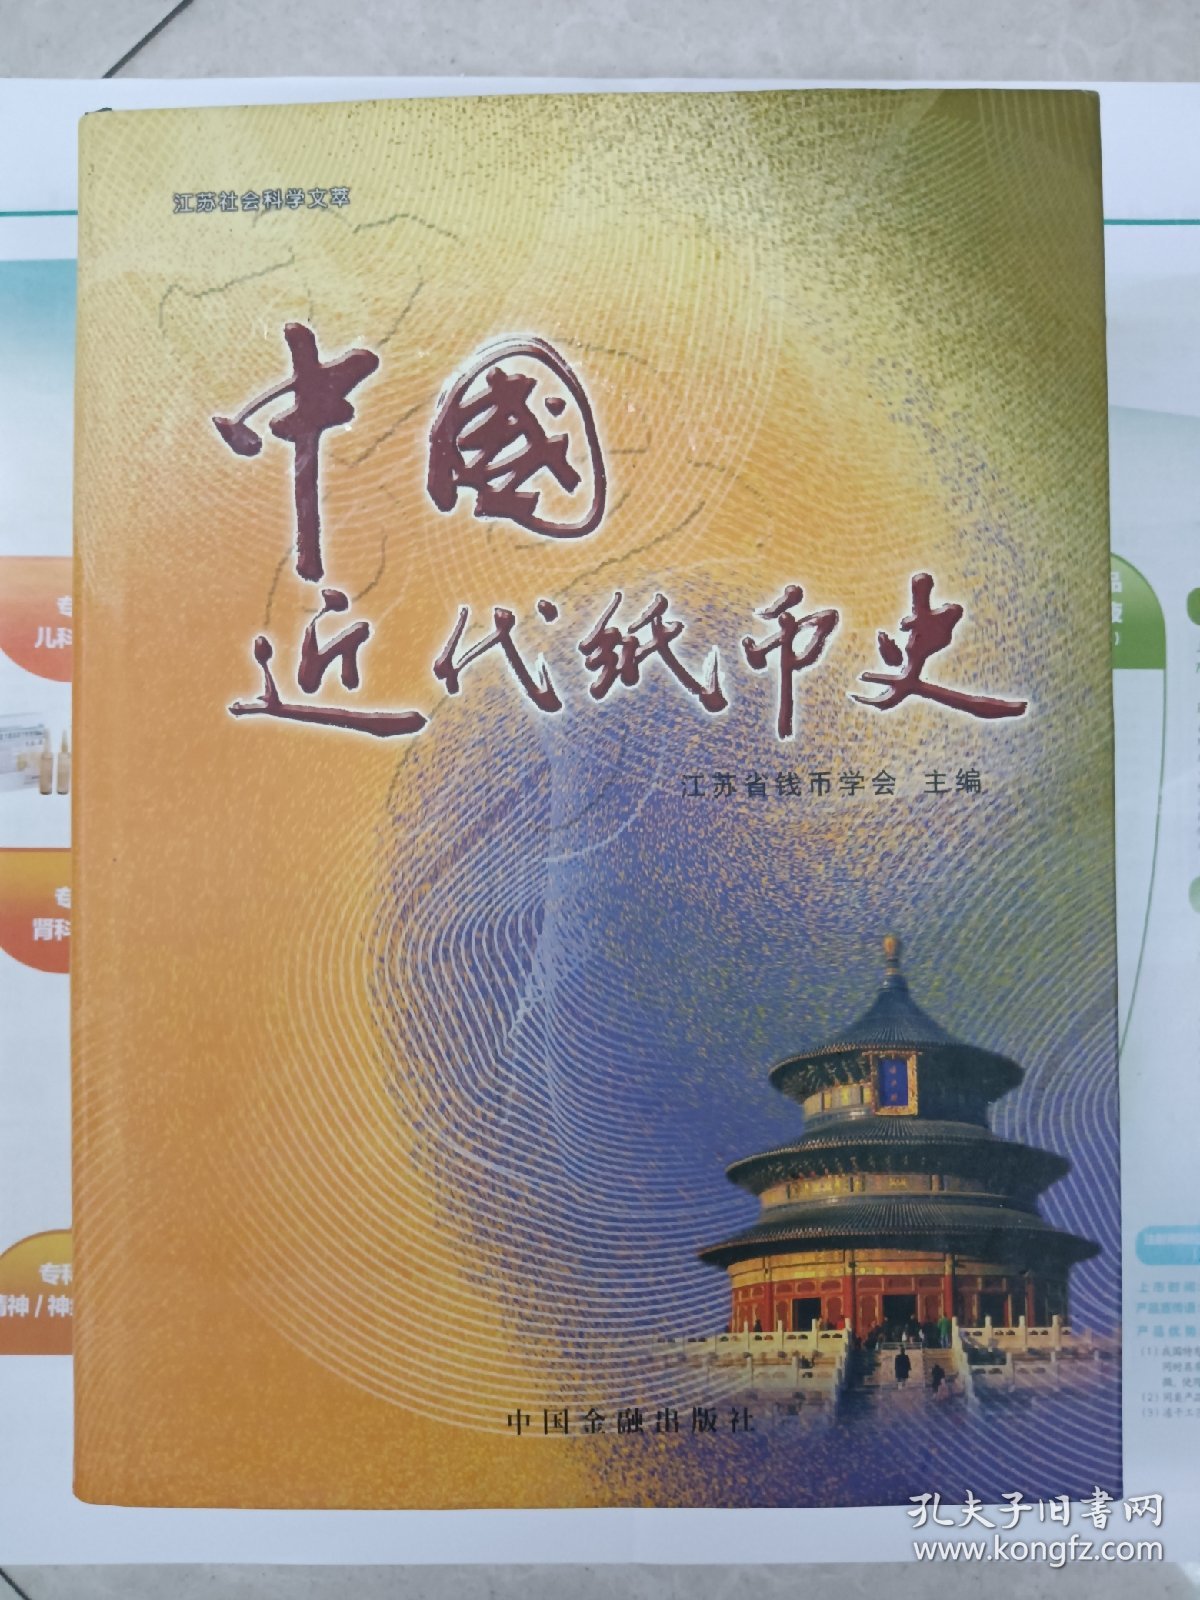 《中国近代纸币史》(前半部上端有轻微水渍印）【在库房B一层门口】